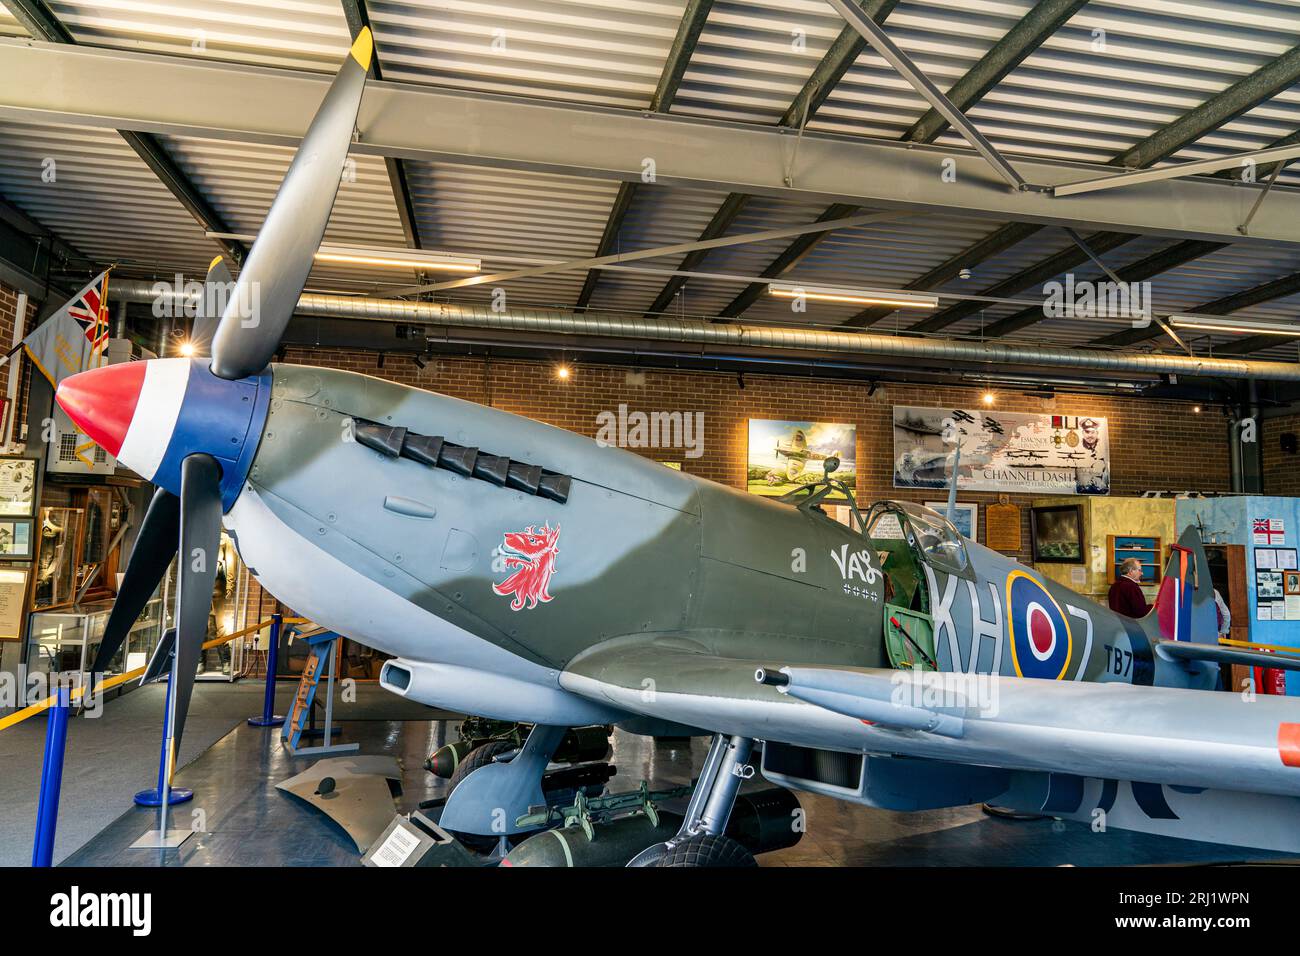 RAF Spitfire XVI exposé à l'intérieur du musée commémoratif Spitfire and Hurricane à l'ancien aérodrome de Manston de la RAF dans le Kent. Vue latérale, hélice et cockpit Banque D'Images